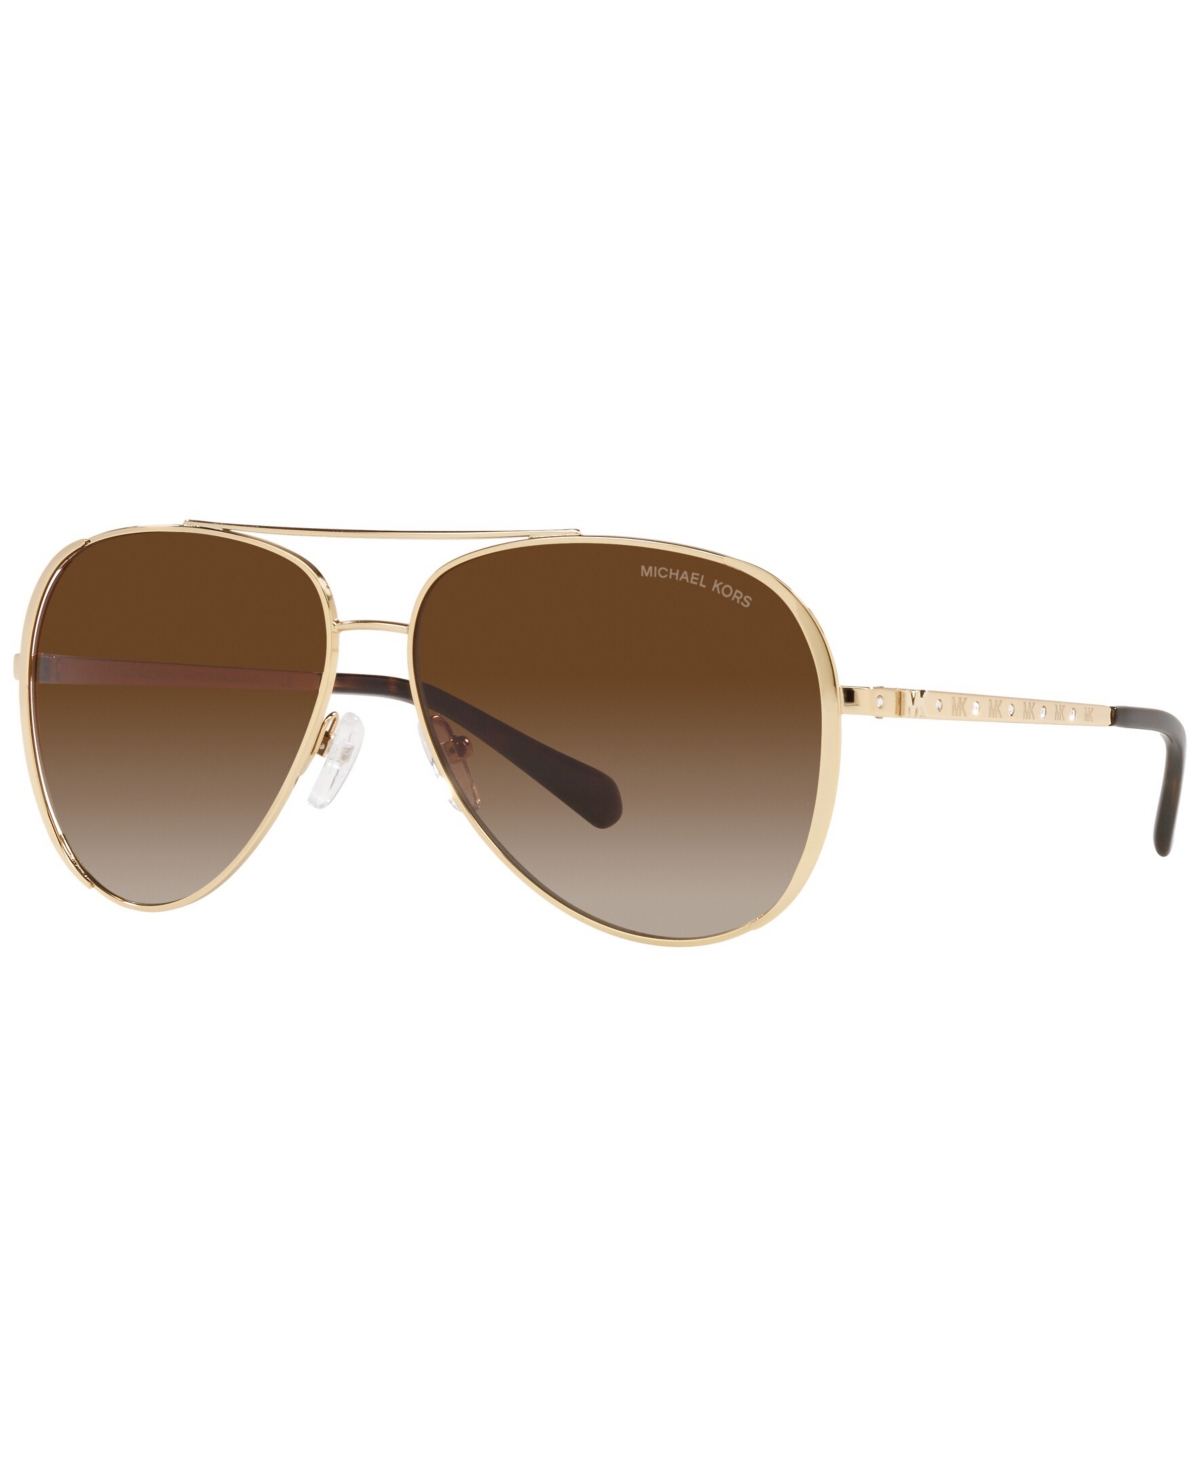 Michael Kors Women's Sunglasses, Mk1101b 60 In Light Gold-tone